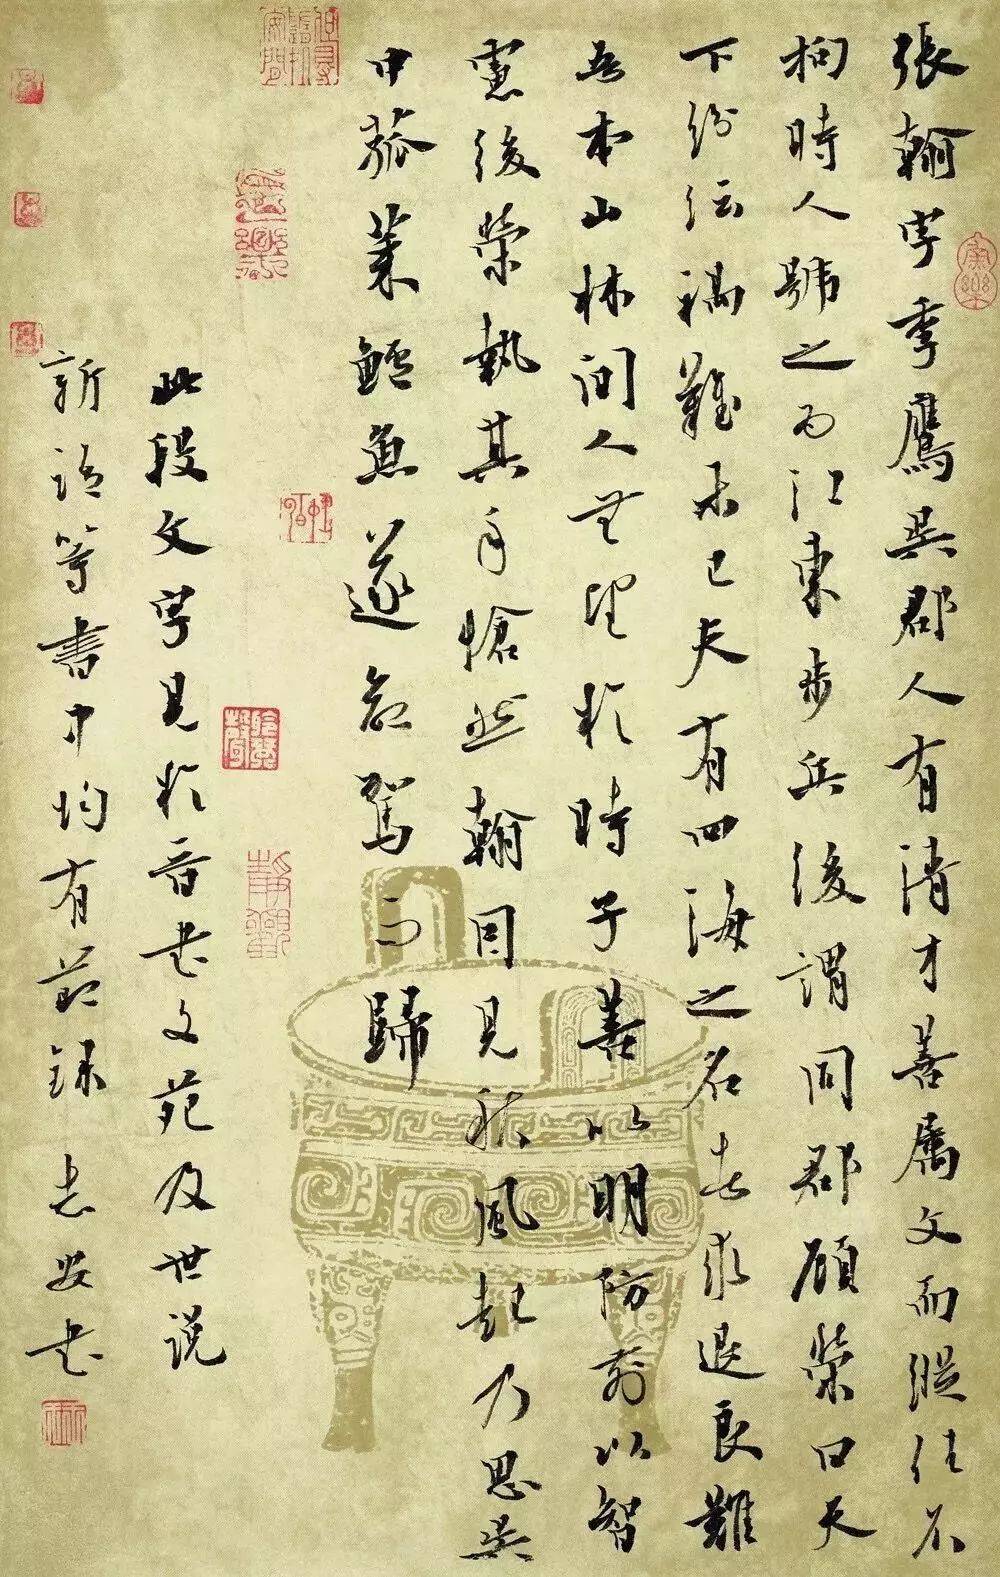 王志安书法是从传统当中来,又能够结合时代审美的一种艺术